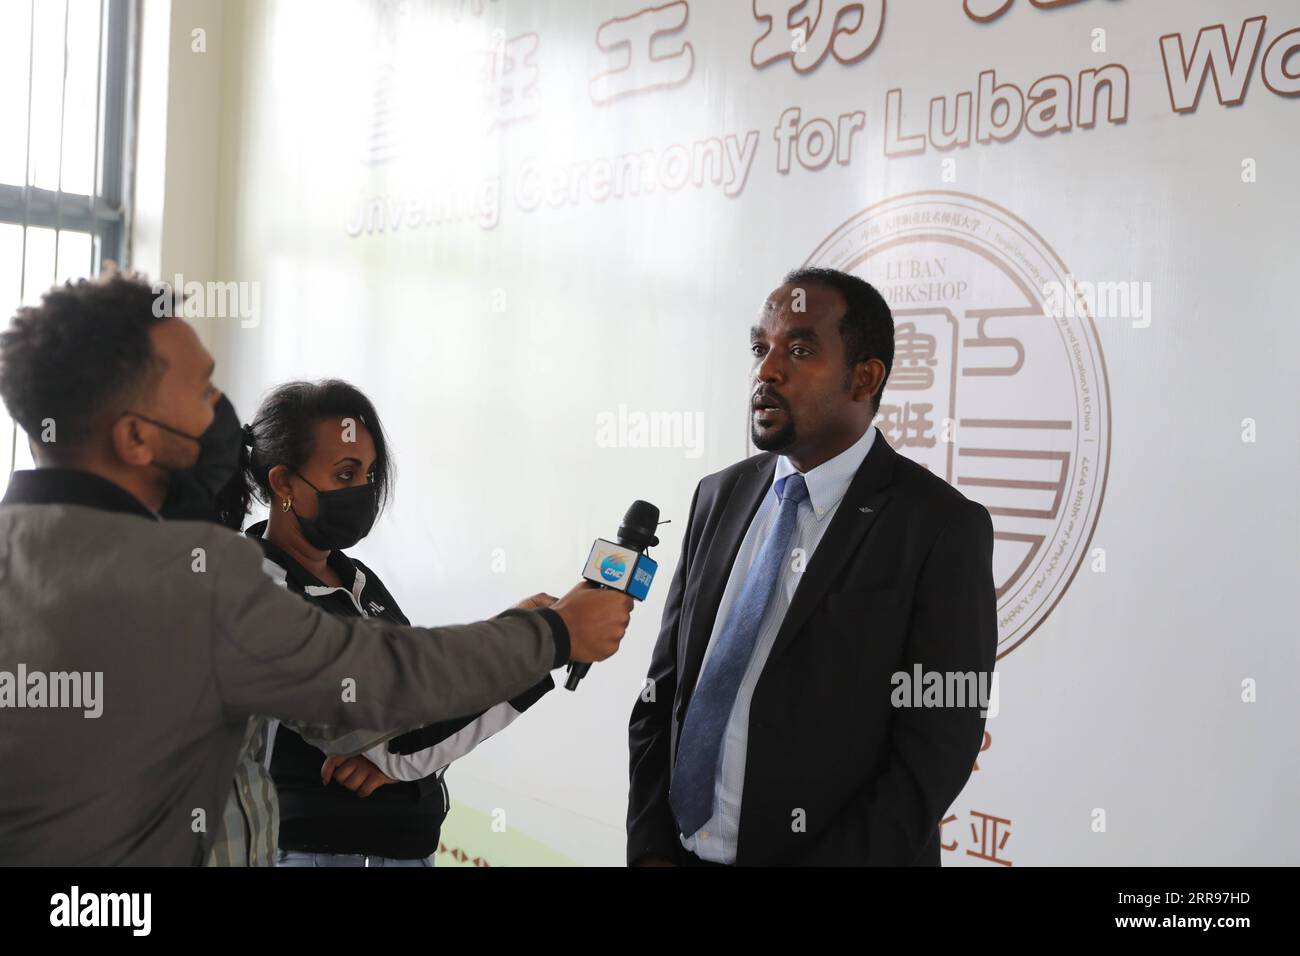 210531 -- ADDIS ABEBA, 31 maggio 2021 -- Teshale Berecha R, presidente dell'Università tecnica etiope, è intervistato con Xinhua ad Addis Abeba, Etiopia, il 28 aprile 2021. Il workshop sui lubani etiopi costruito di recente in Cina offre una formazione tecnica di alto livello per aiutare gli studenti universitari etiopi a soddisfare i requisiti del mercato globale emergente. ANDARE CON la caratteristica: Il laboratorio cinese di Luban accende le aspirazioni orientate alla tecnologia dei giovani etiopi ETIOPIA-ADDIS ABEBA-CINA-LUBAN WORKSHOP WangxPing PUBLICATIONxNOTxINxCHN Foto Stock